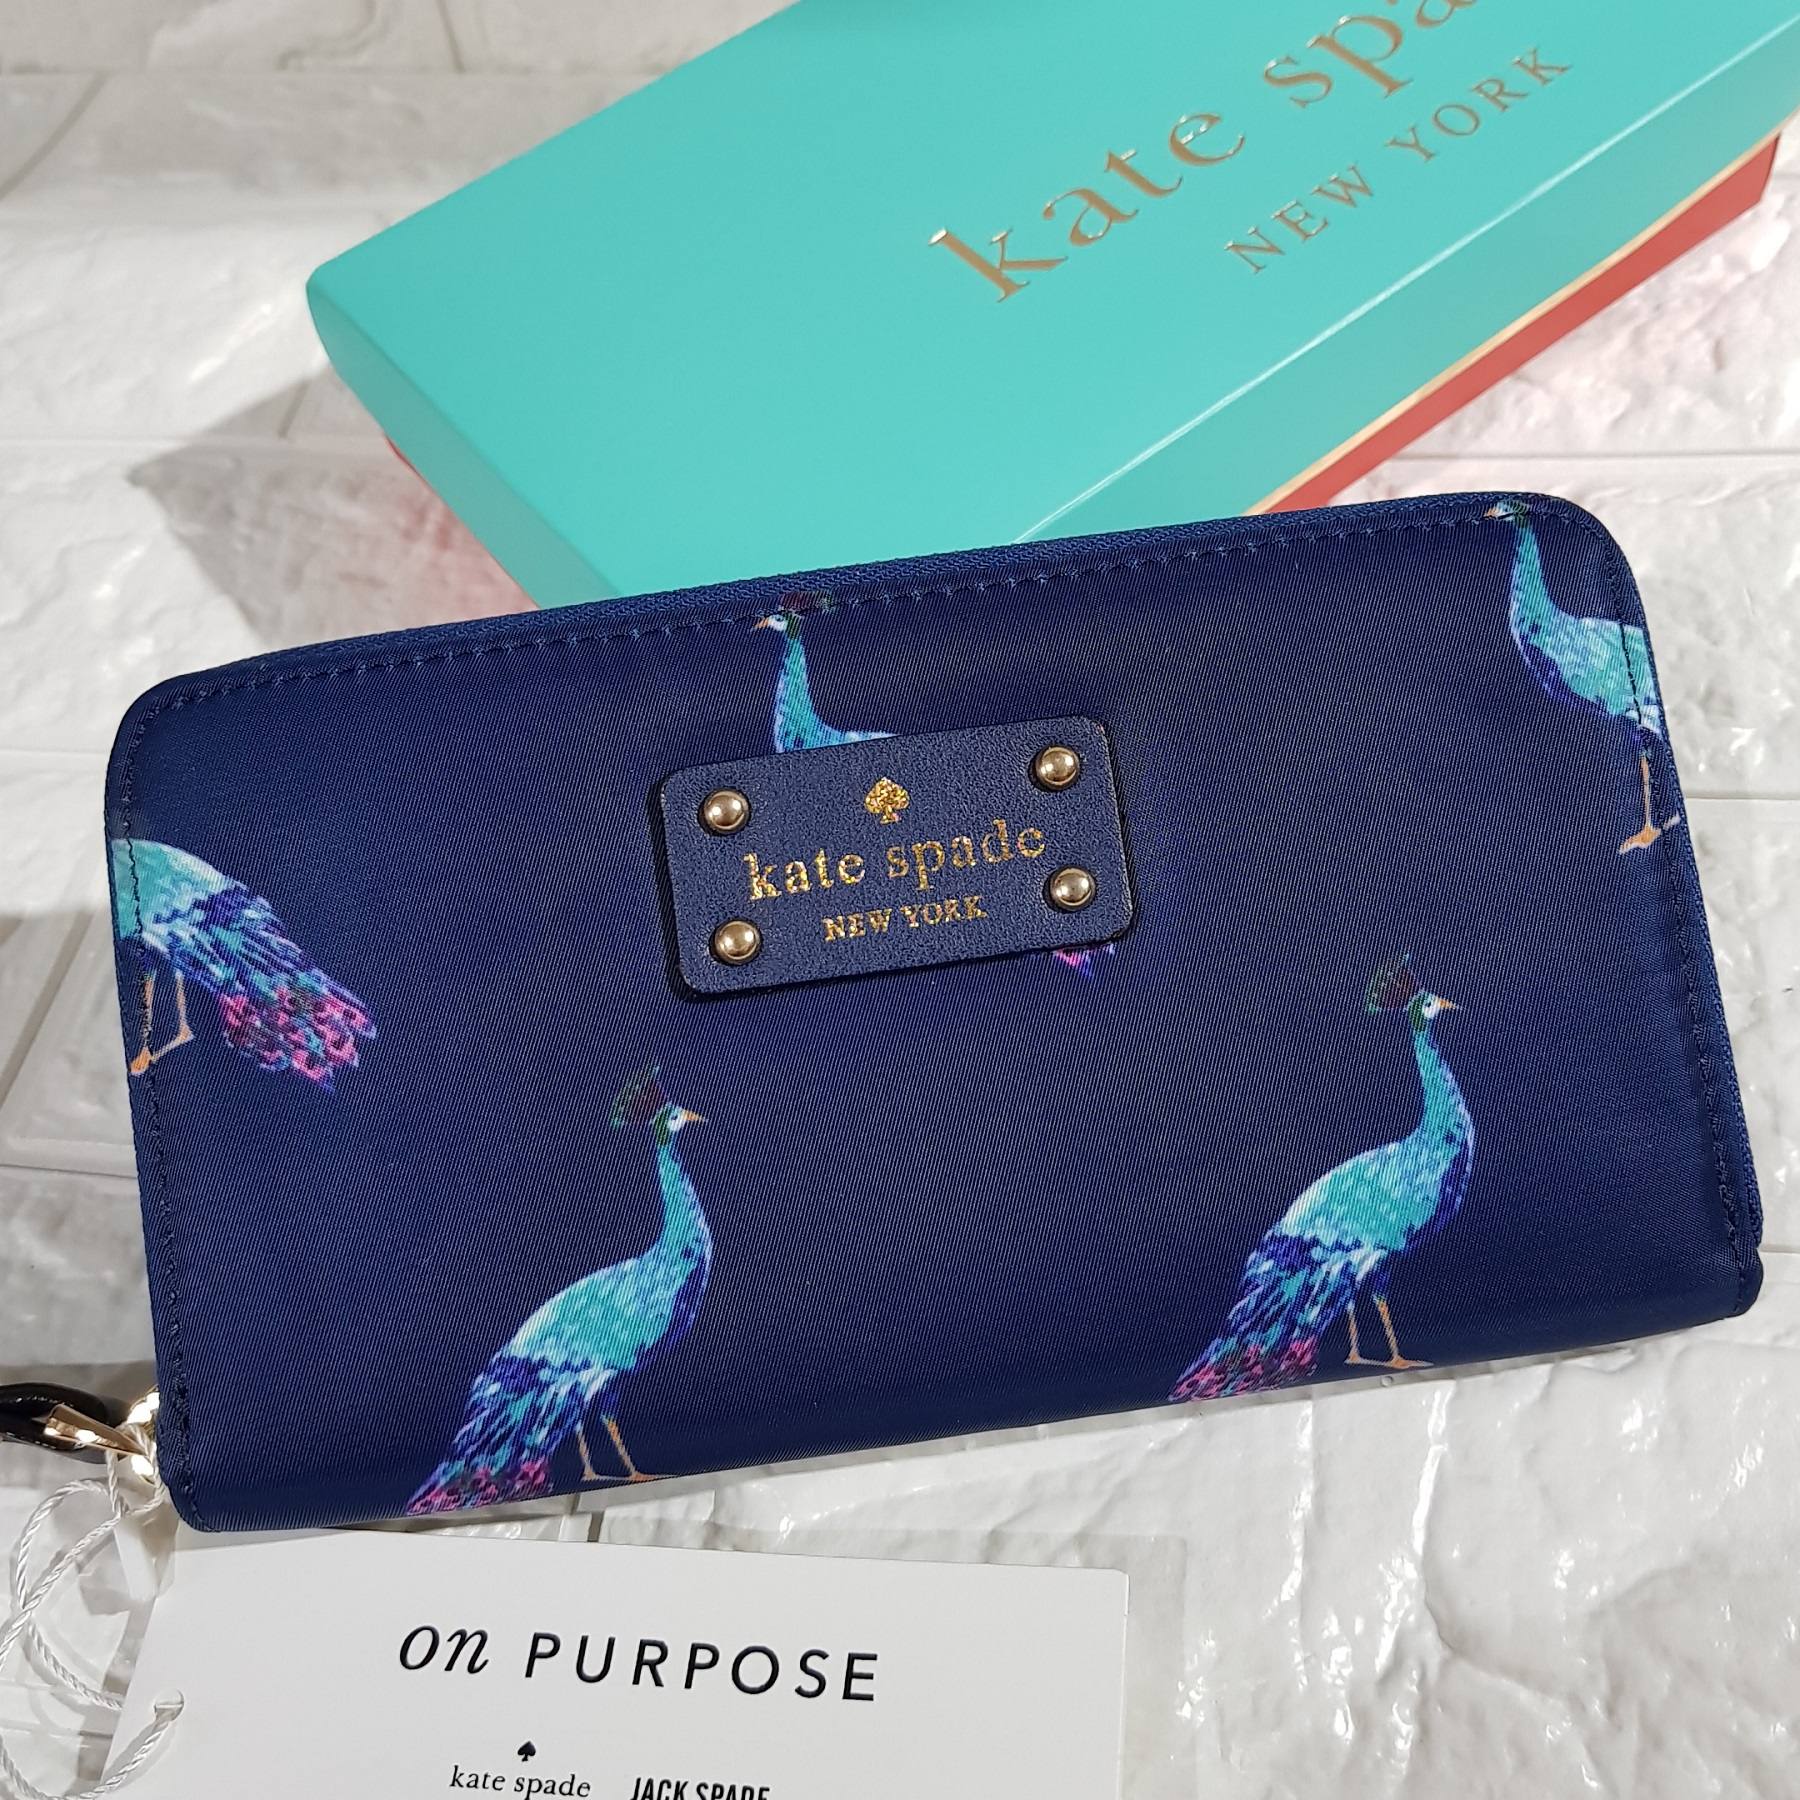 Kate Spade NY Peacock crossbody | Peacock purse, Fashion bags, Cheap purses